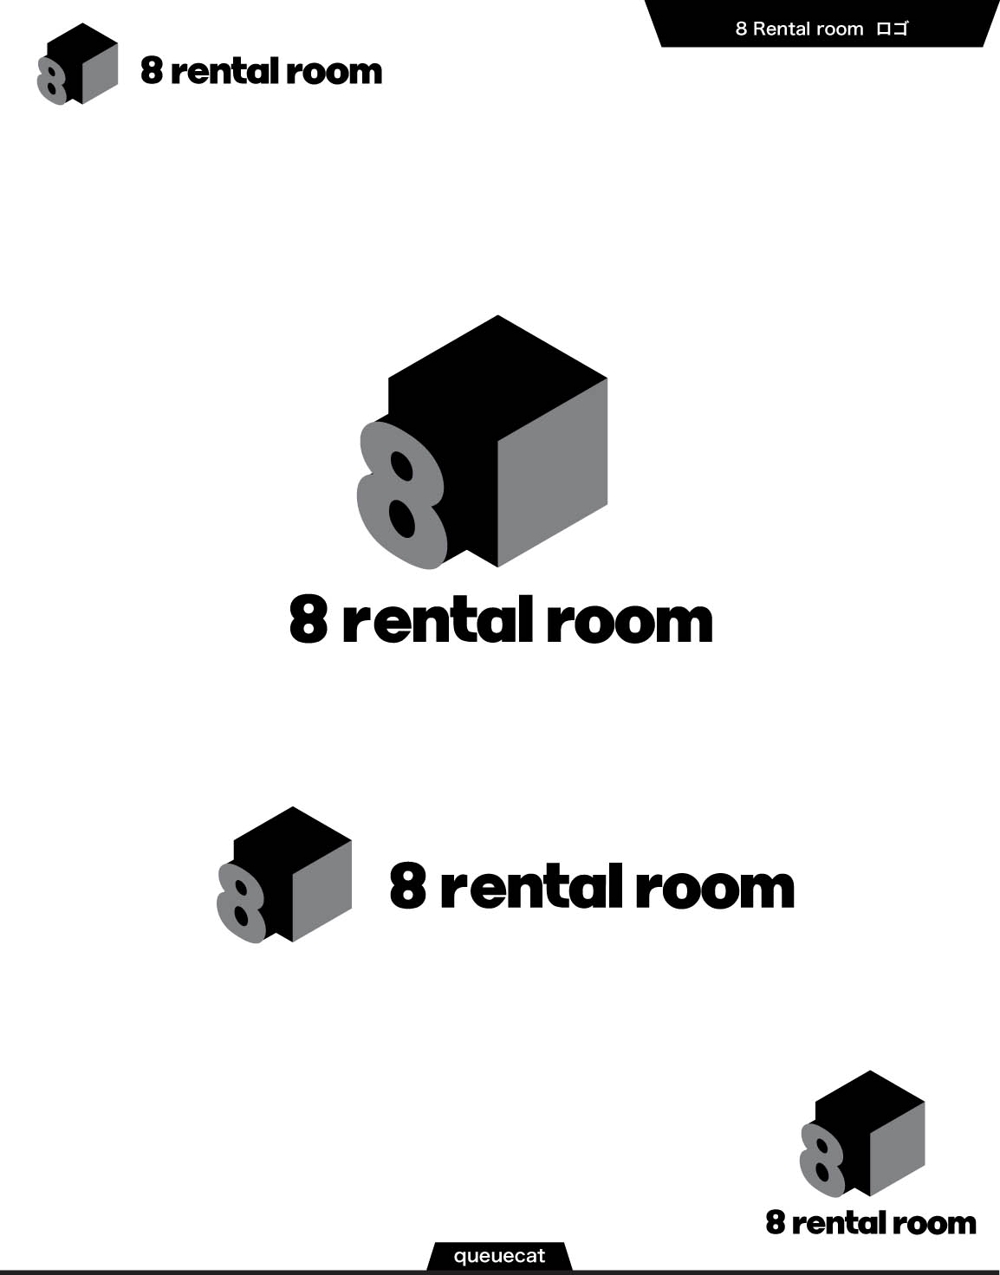 8 Rental room1_1.jpg